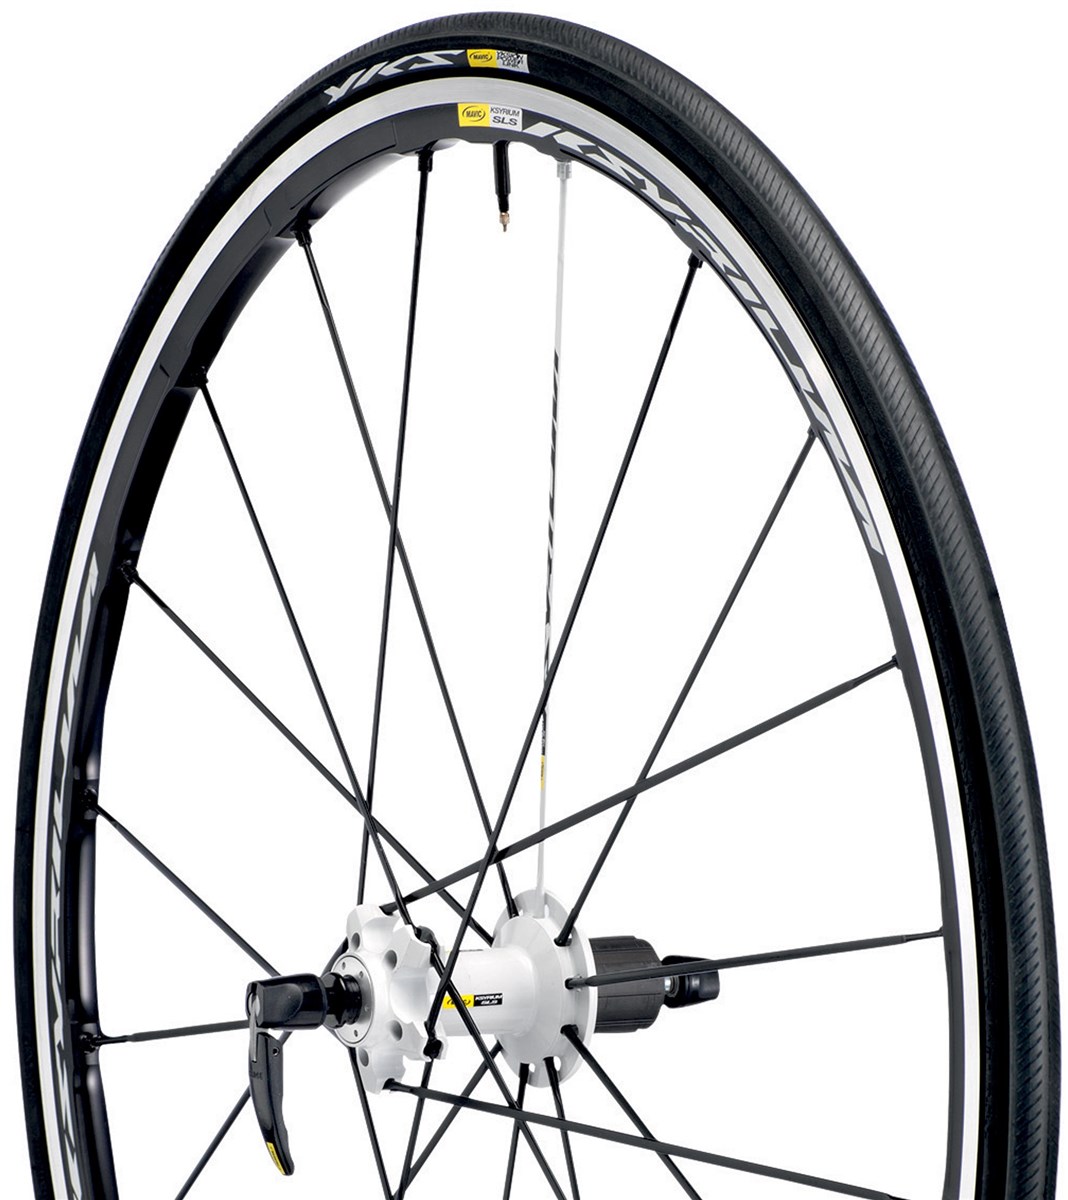 Mavic Ksyrium SLS Tubular Road Wheel With Wheel-Tyre System 2015 product image